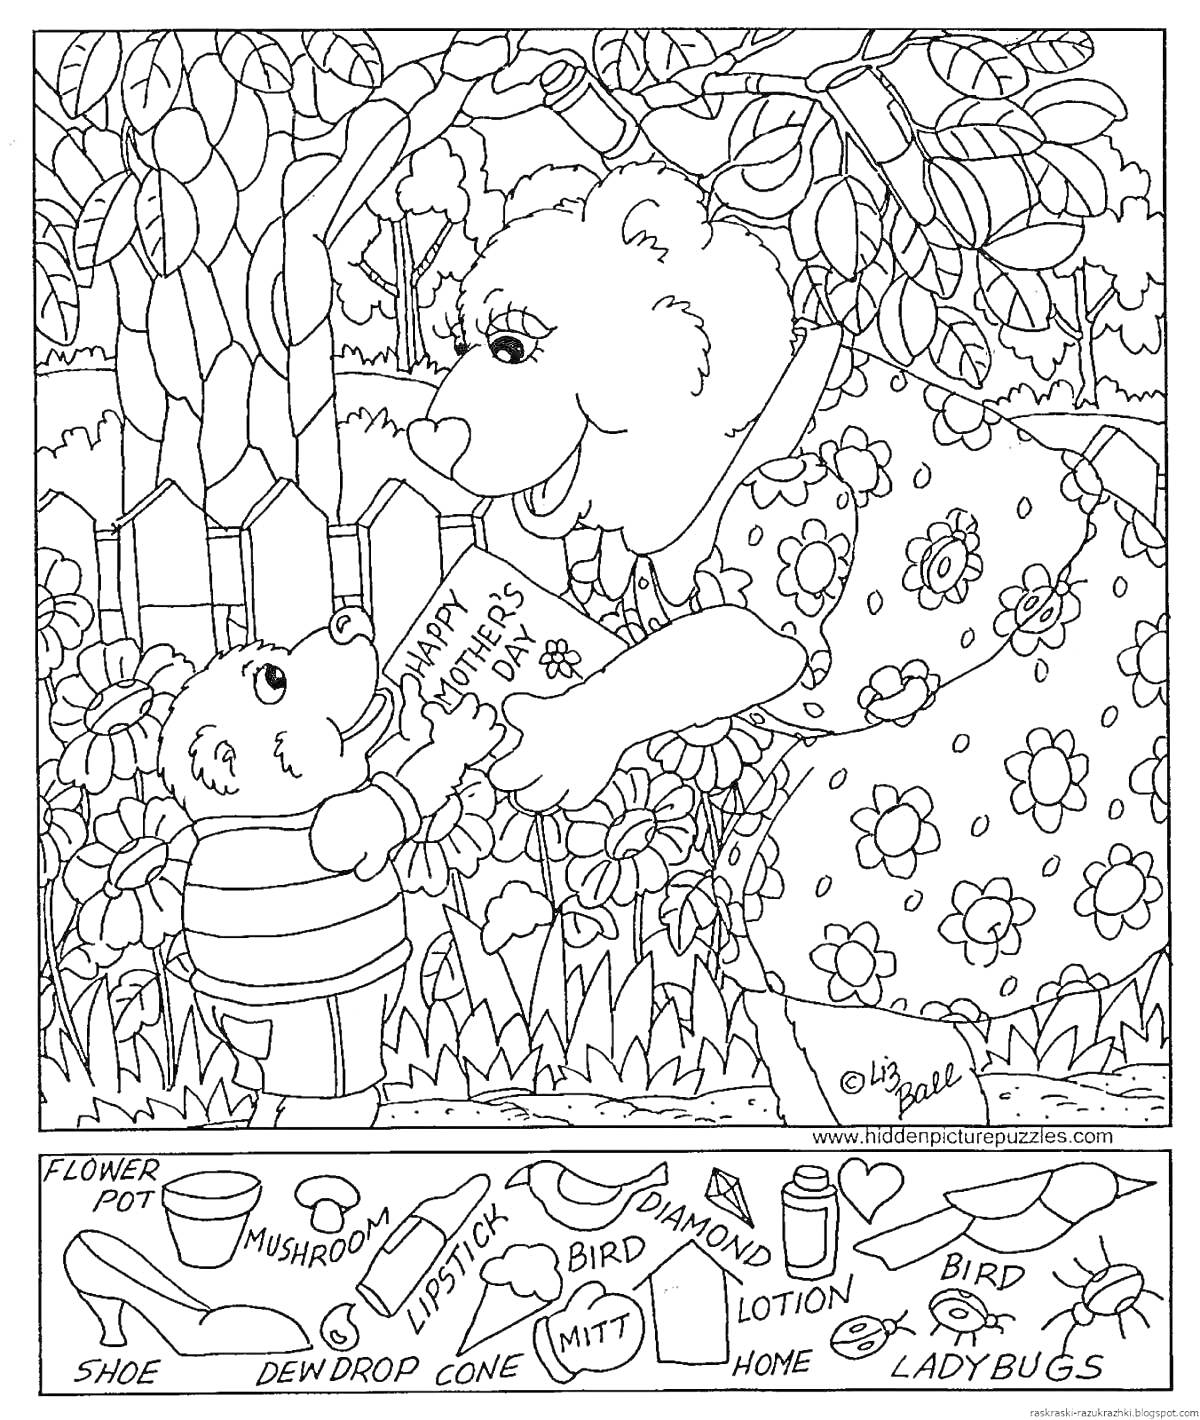 Раскраска Раскраска с медведями и элементами, которые нужно найти: цветочный горшок, туфля, грибы, губная помада, капля росы, конус, прихватка, даминон, лосьон, улей, птица, божьи коровки